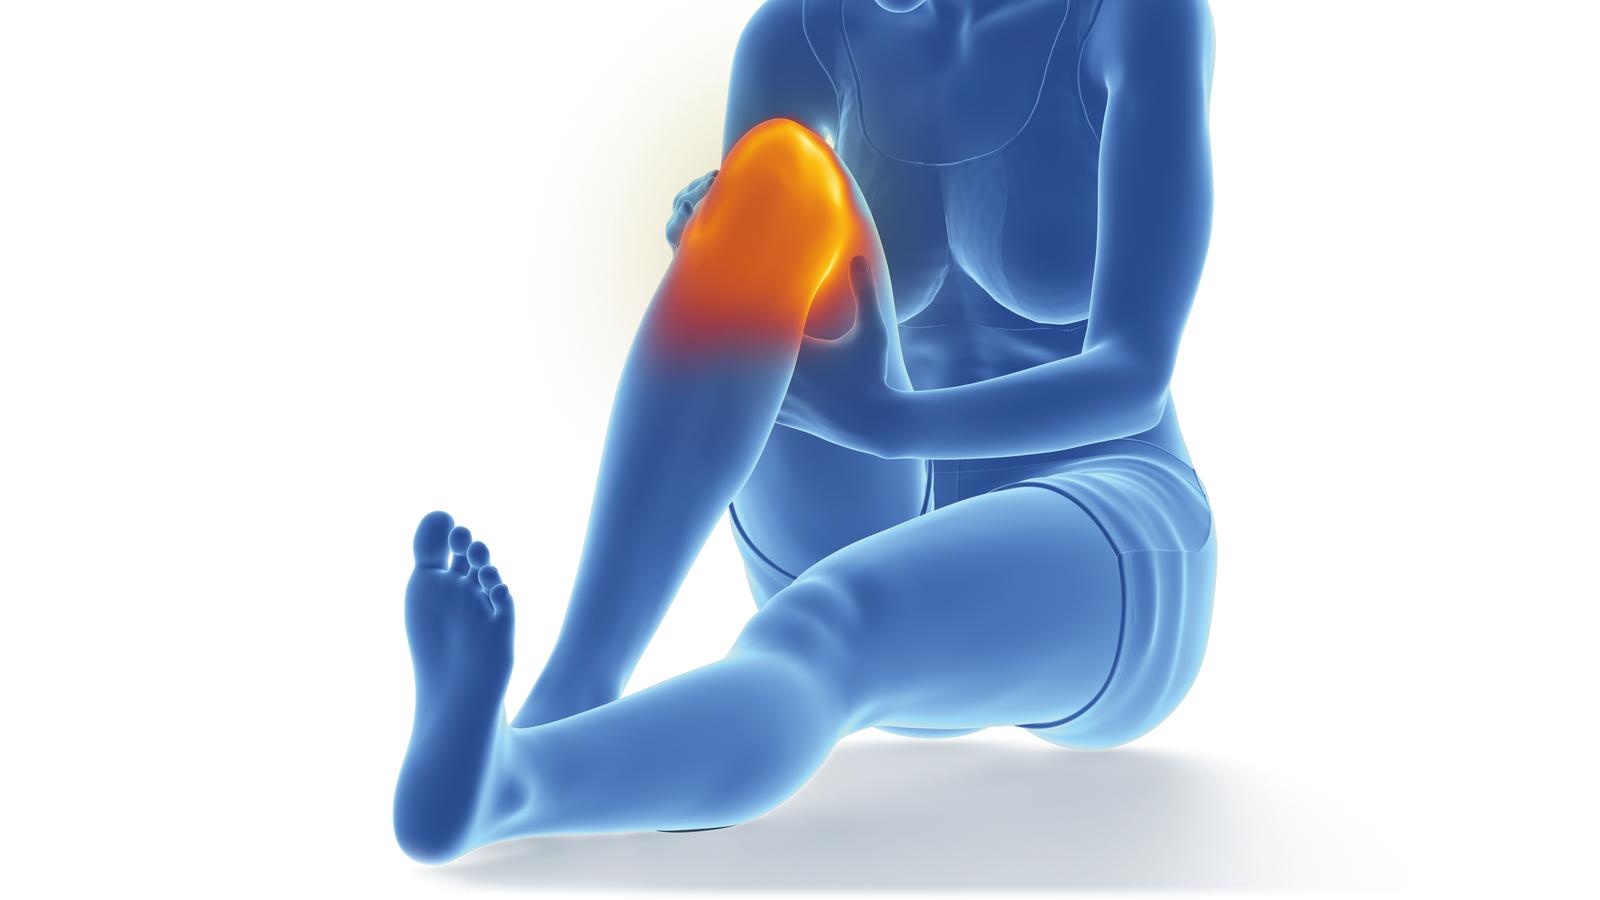 Grafik von Frau mit entzundenem Knie